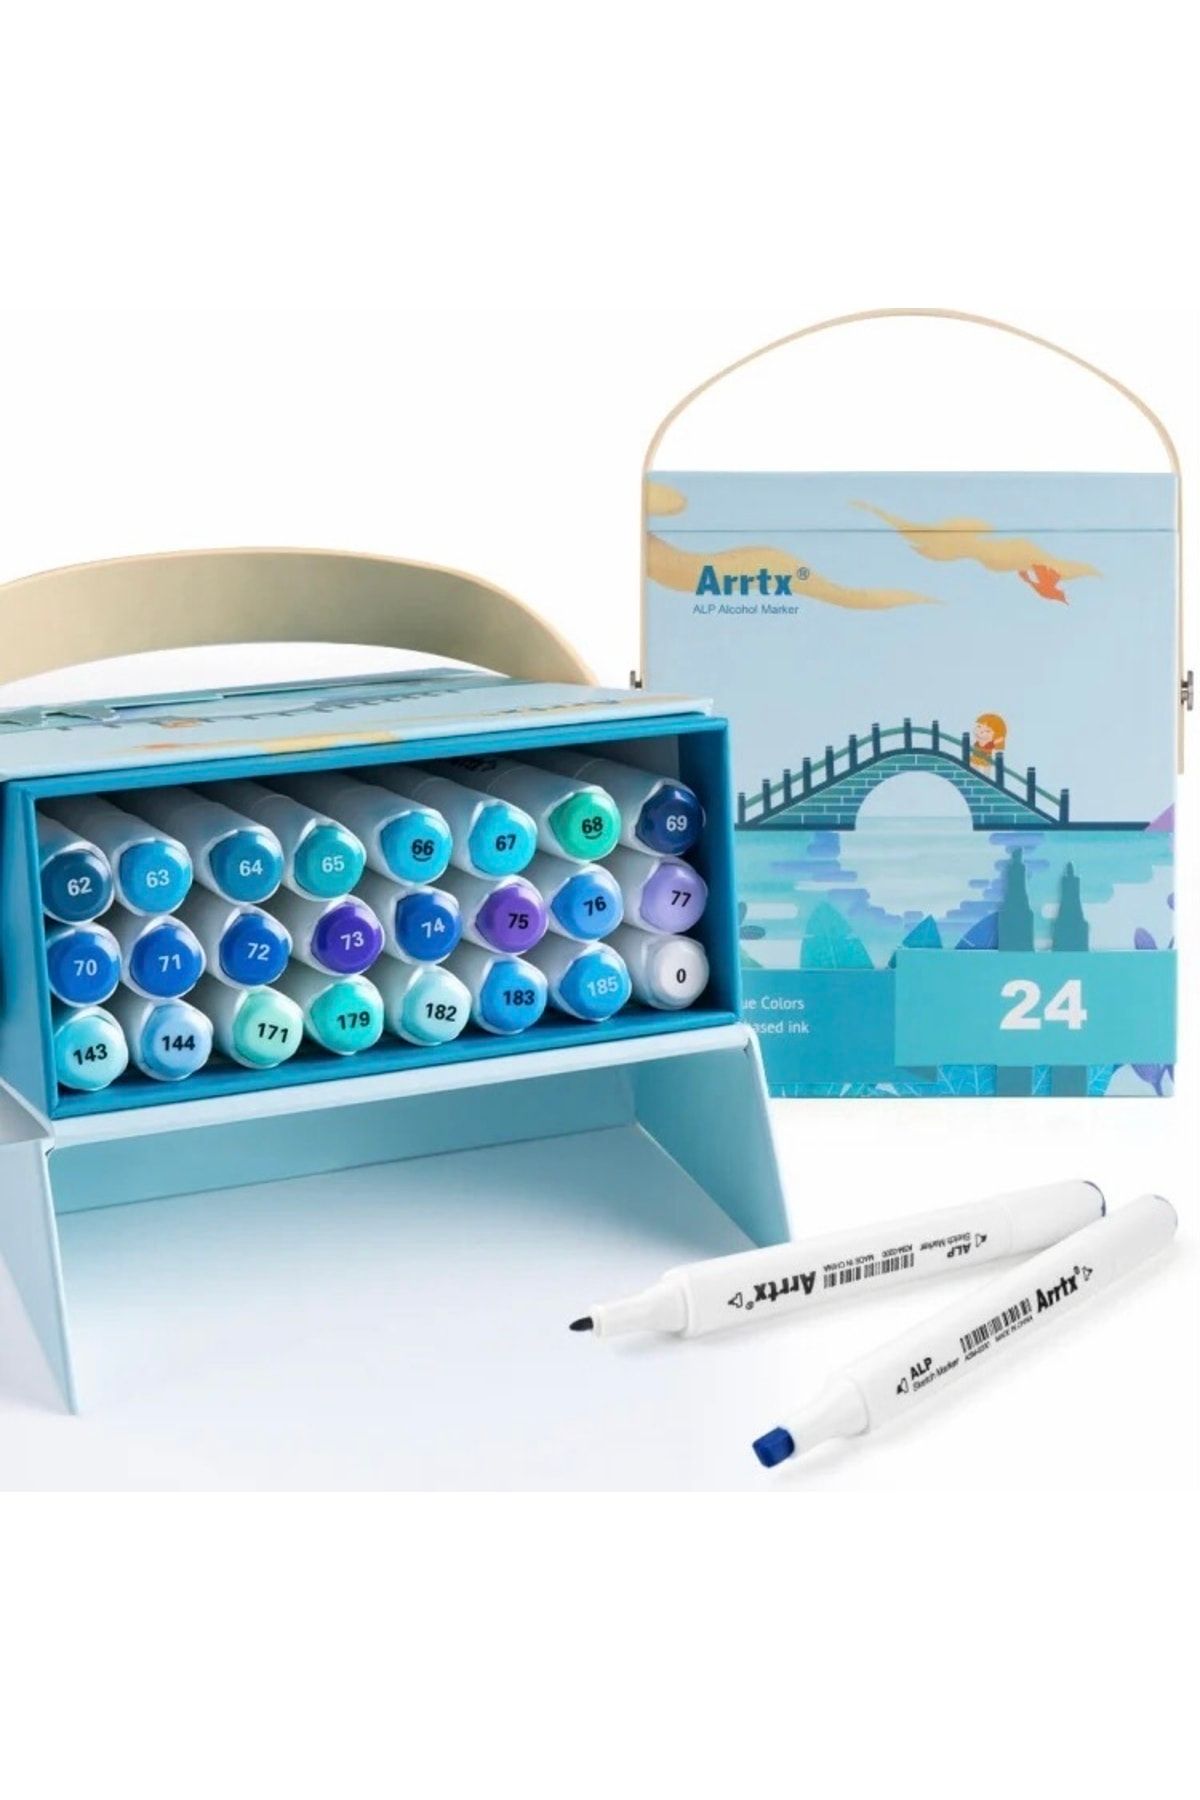 ARRTX Çift Uçlu Marker Marine Mavi Renkler 24lü Set Özel Kutusunda